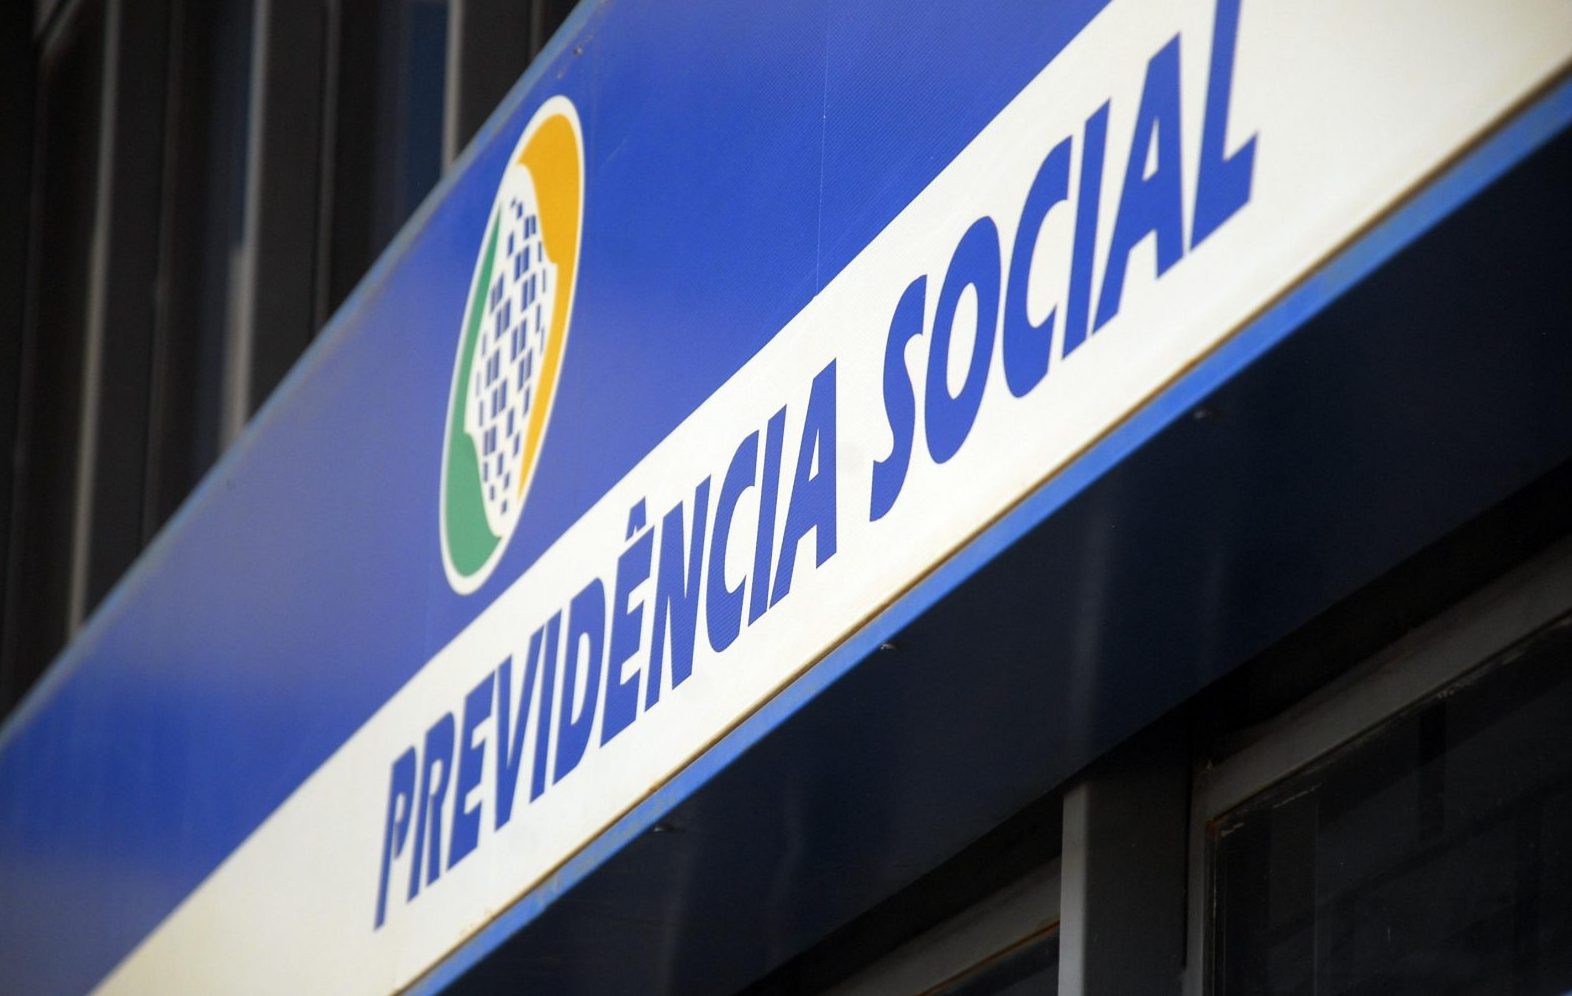 OS NÚMEROS ALARMANTES DA PREVIDÊNCIA SOCIAL SÃO VERDADEIROS? - POR JULIO CARDOSO - News Rondônia